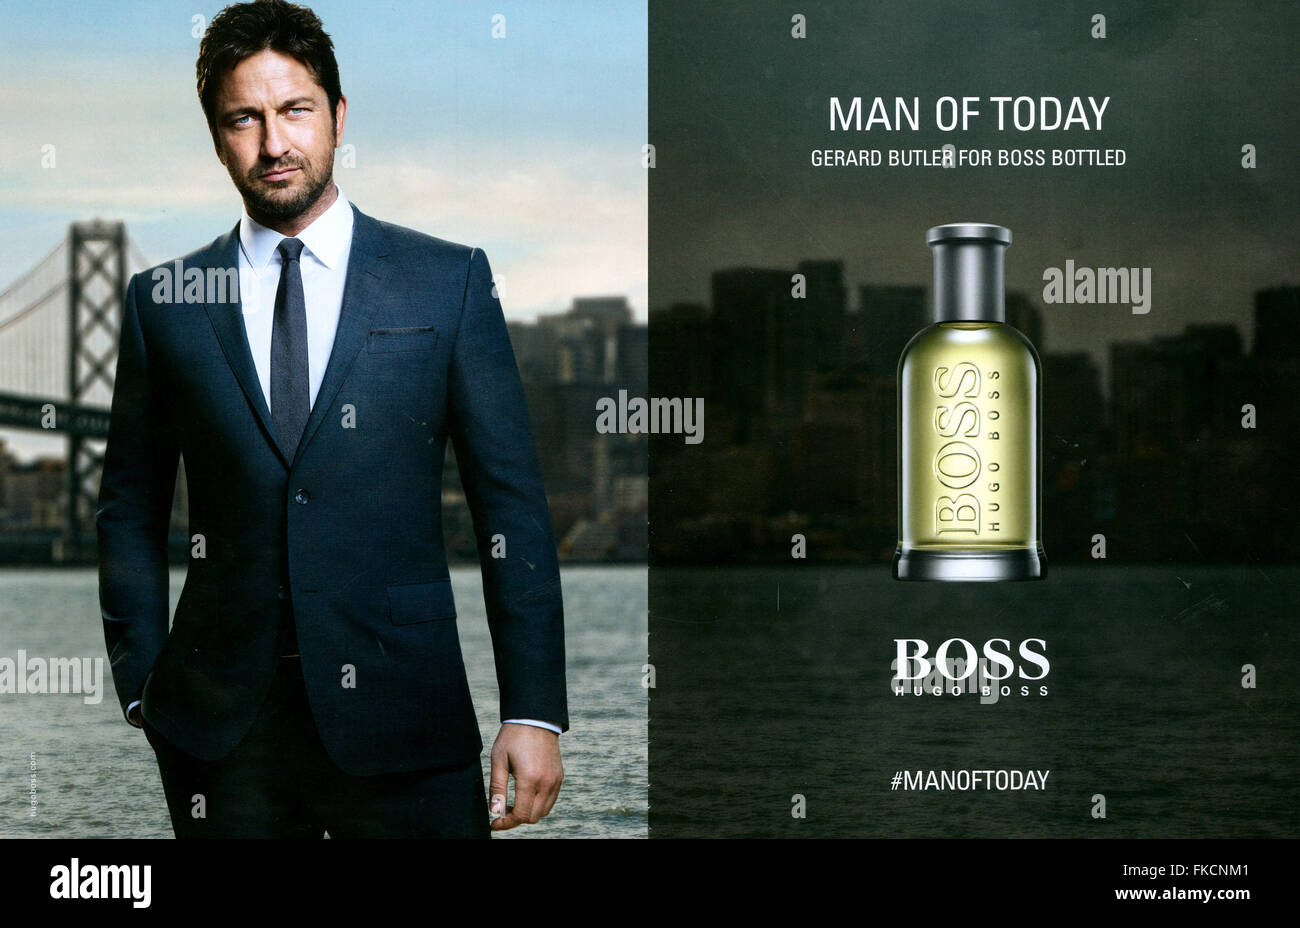 Hugo Boss New Advert Flash Sales | website.jkuat.ac.ke